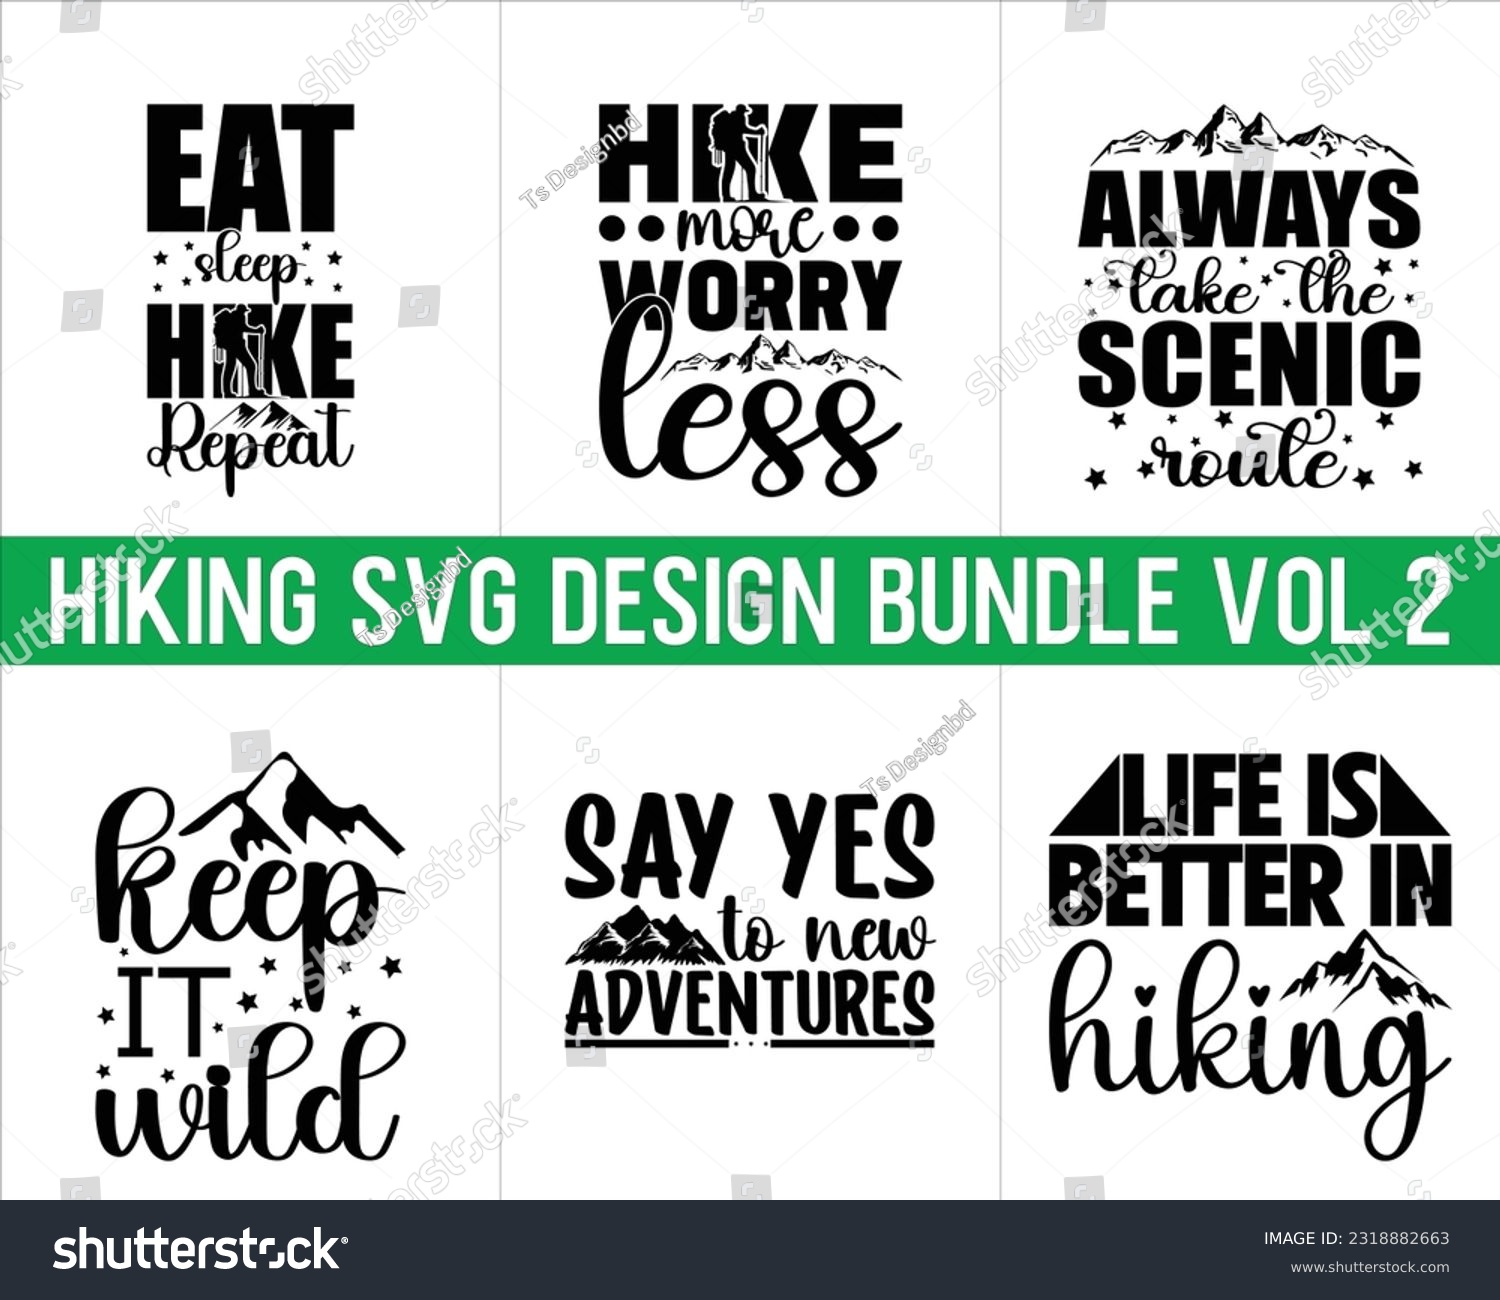 SVG of Hiking Svg Design Bundle Vol 2,Hiking Svg Design, Mountain illustration, outdoor adventure ,Outdoor Adventure Inspiring Motivation Quote,camping shirt, camping, hiking svg